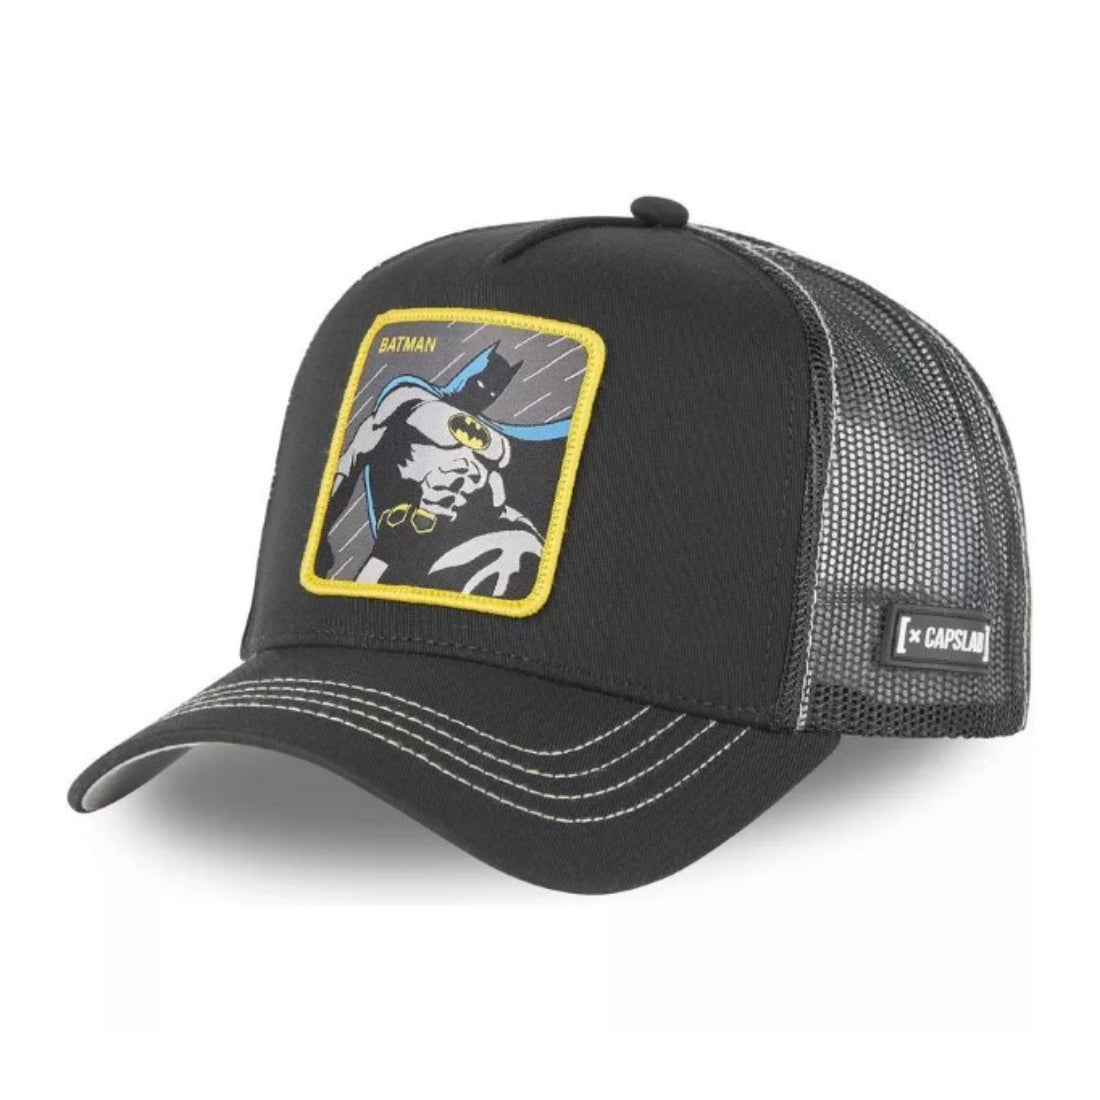 Queue Caps Batman Cap - Black - قبعة - Store 974 | ستور ٩٧٤